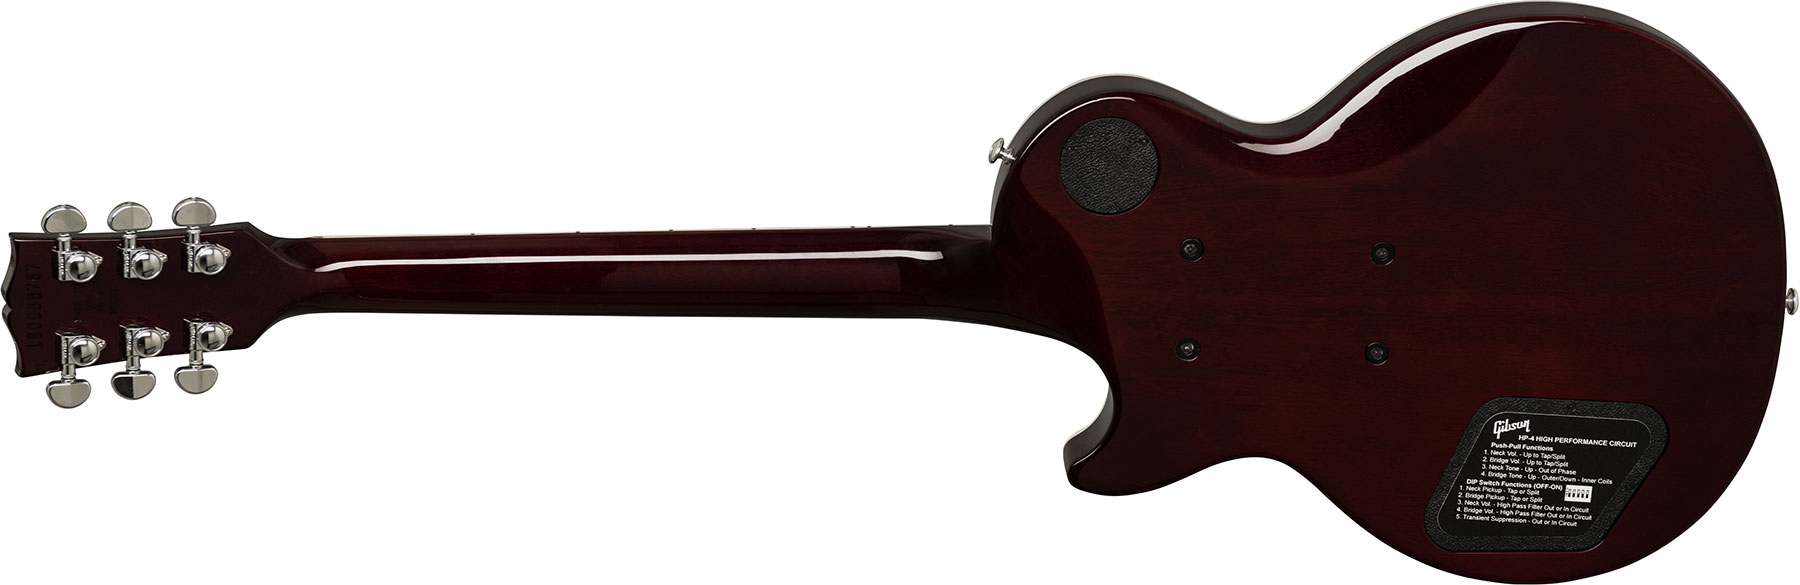 Gibson Les Paul Standard Hp-ii 2018 2h Ht Ric - Hot Pink Fade - Enkel gesneden elektrische gitaar - Variation 1